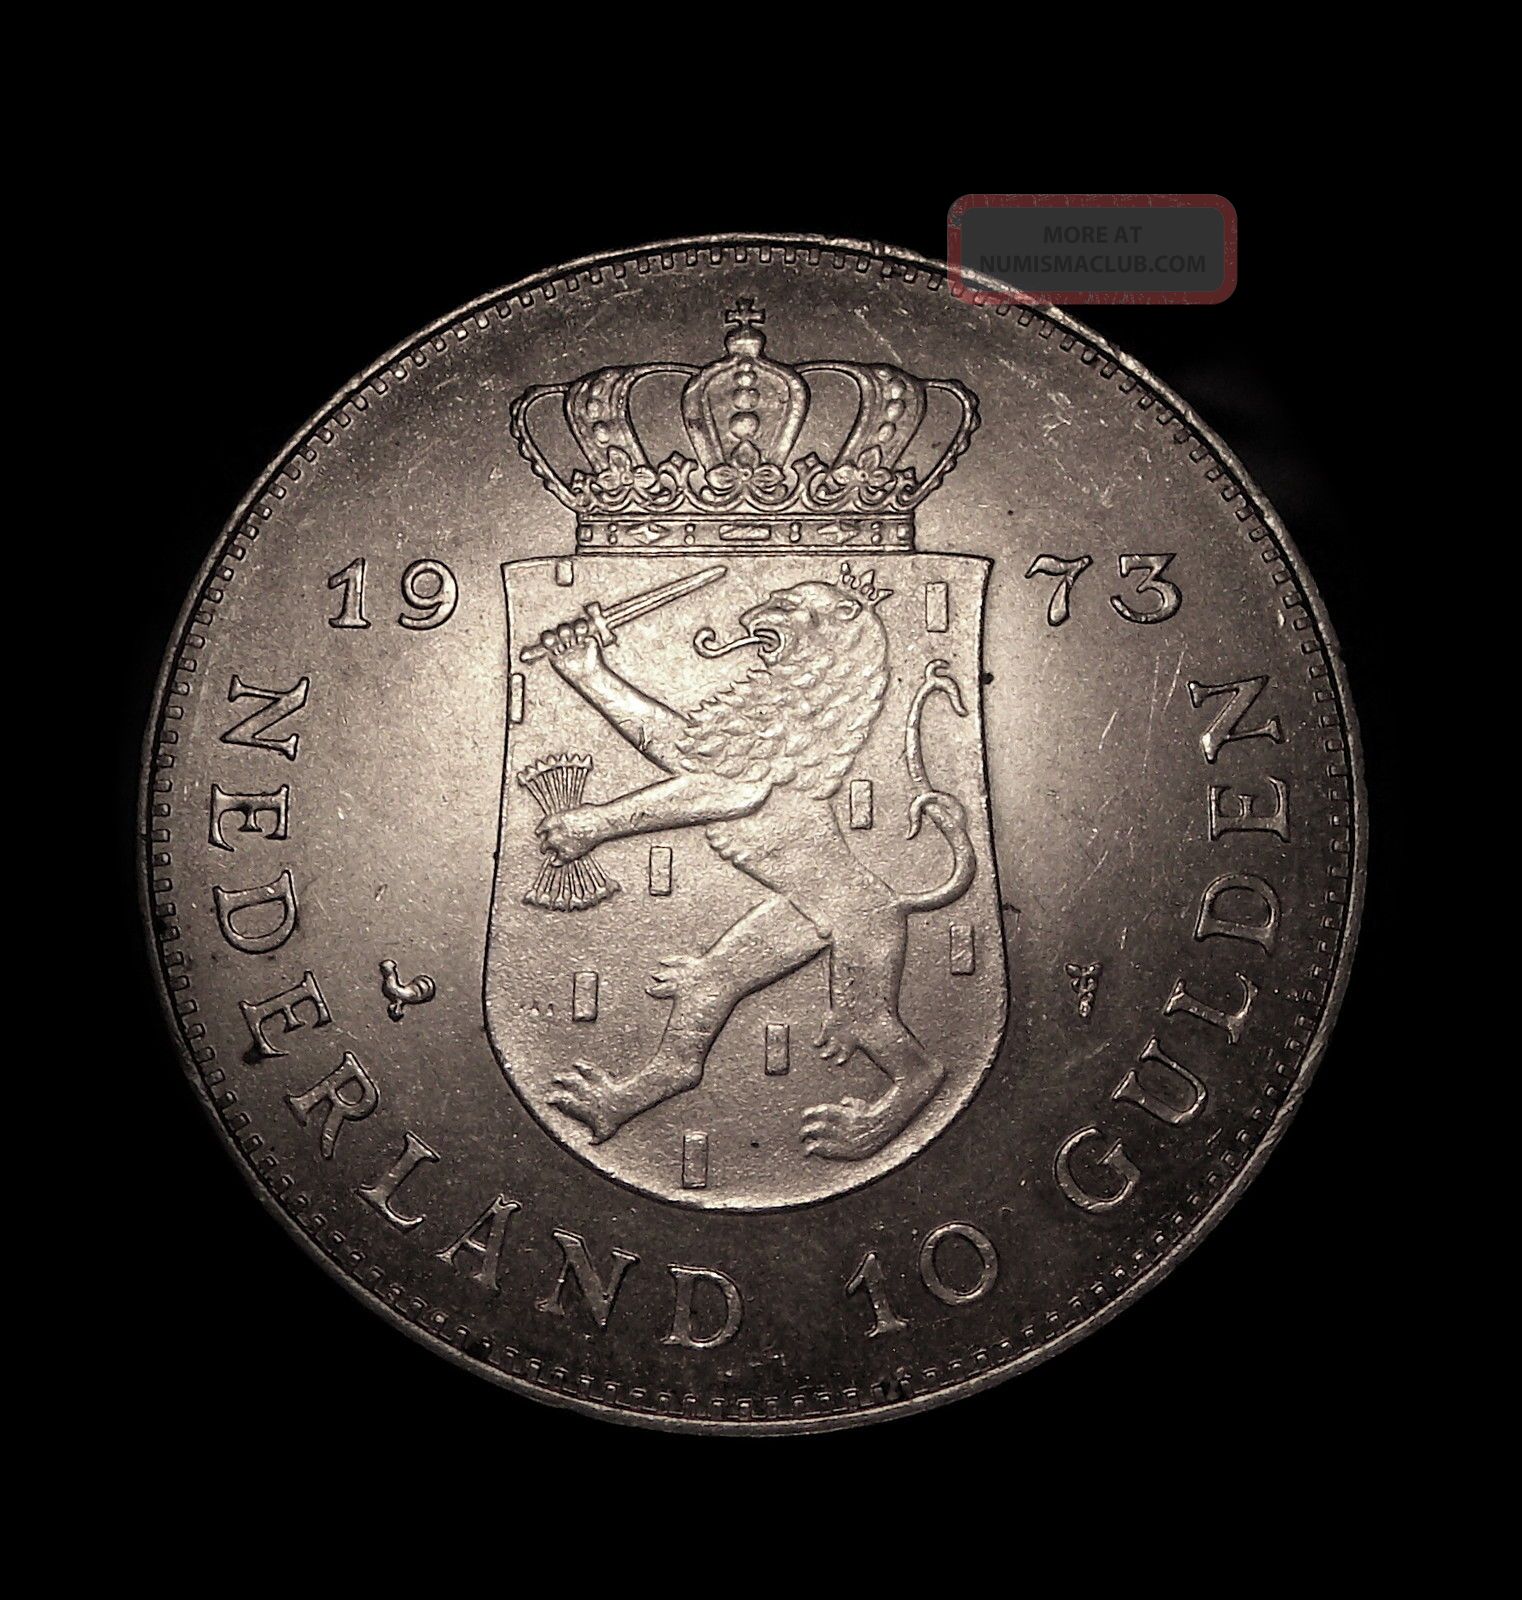 1973 Netherlands 10 Gulden Silver Crown Unc Silver Coin